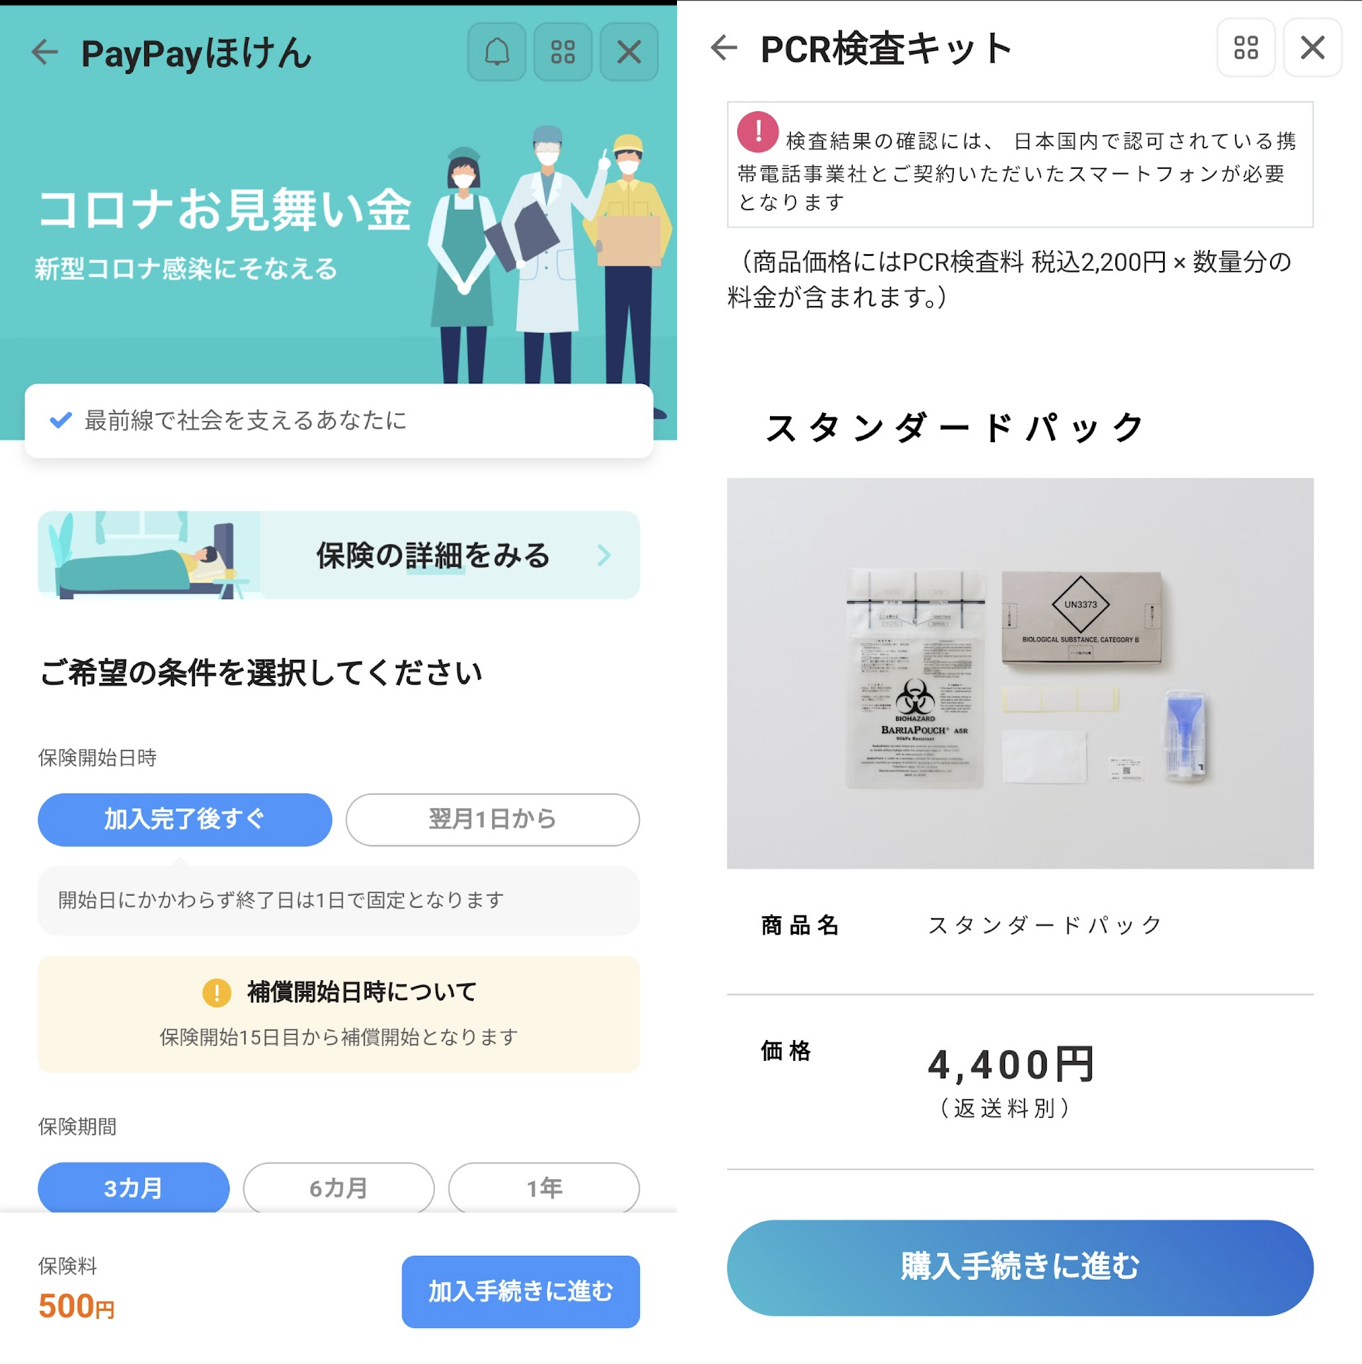 【PayPayほけん】コロナお見舞い金とPCR検査キット